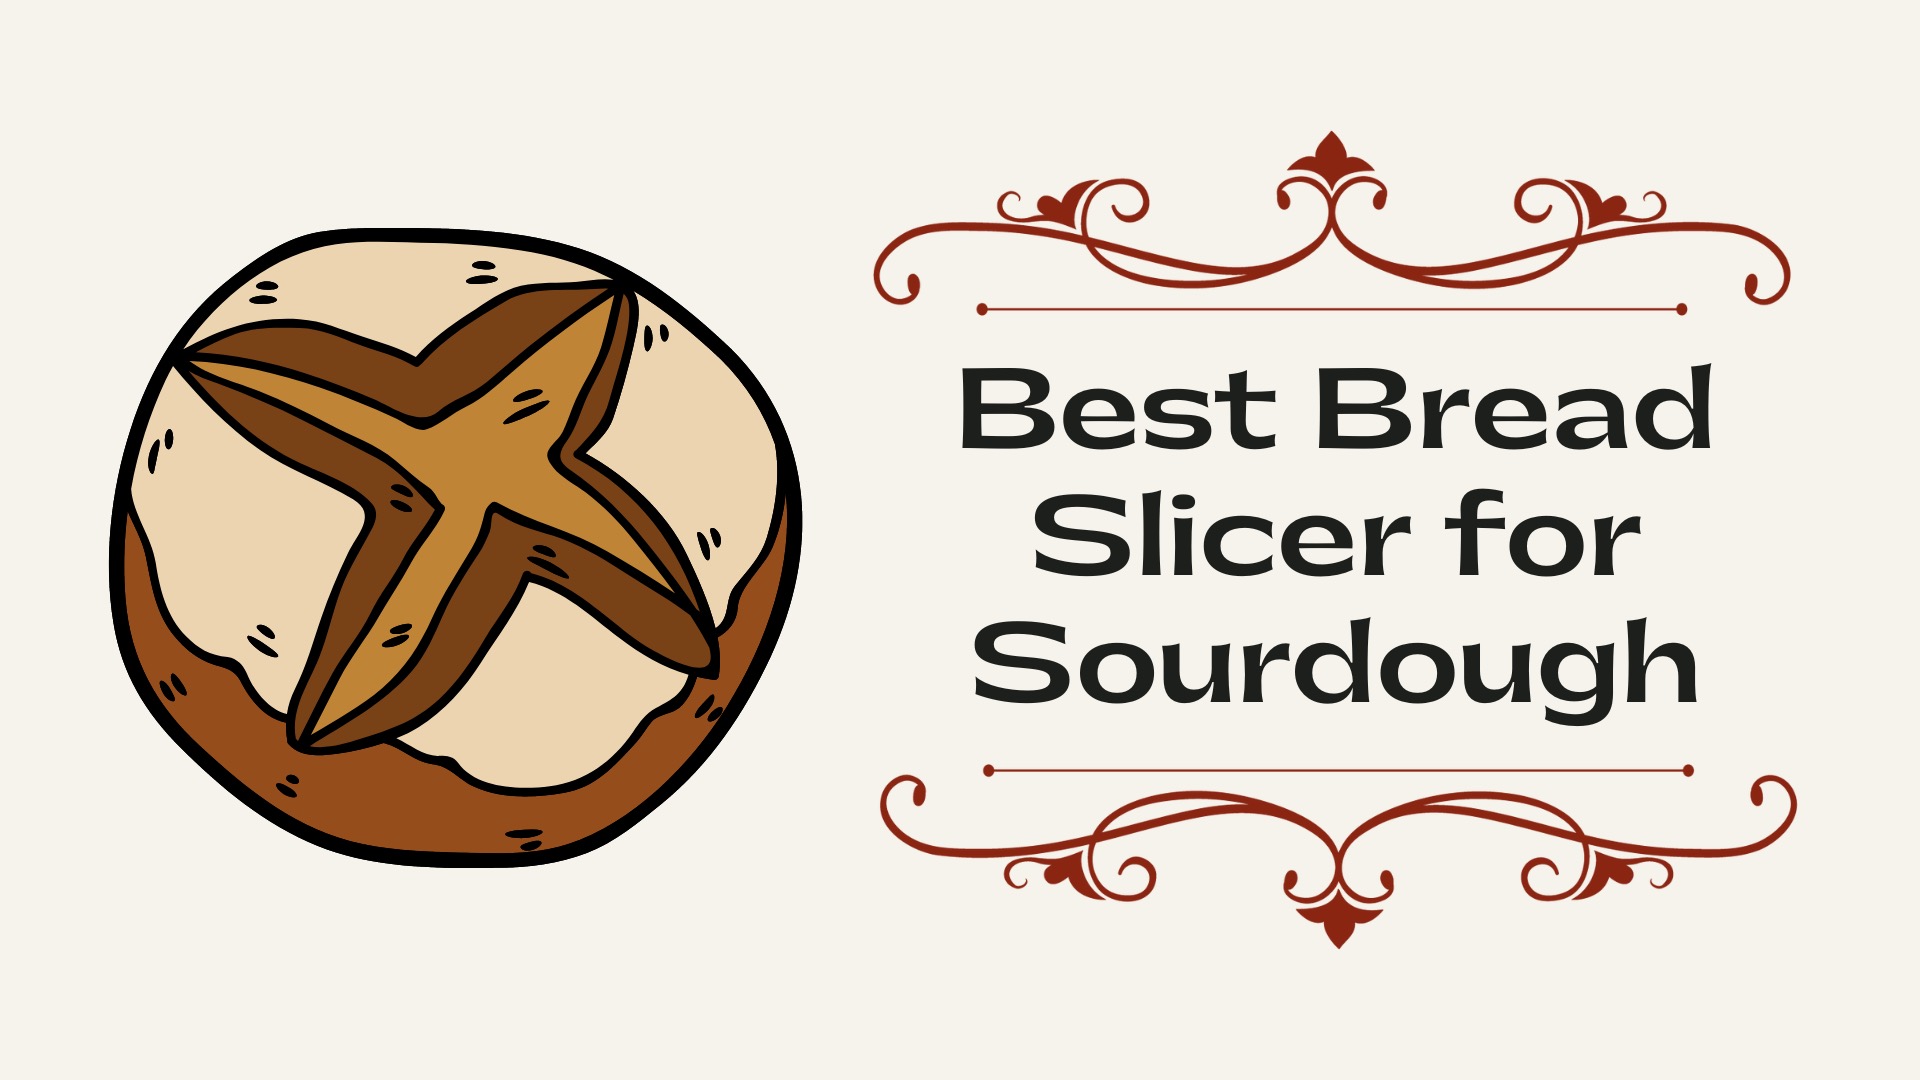 Best Bread Slicer for Sourdough